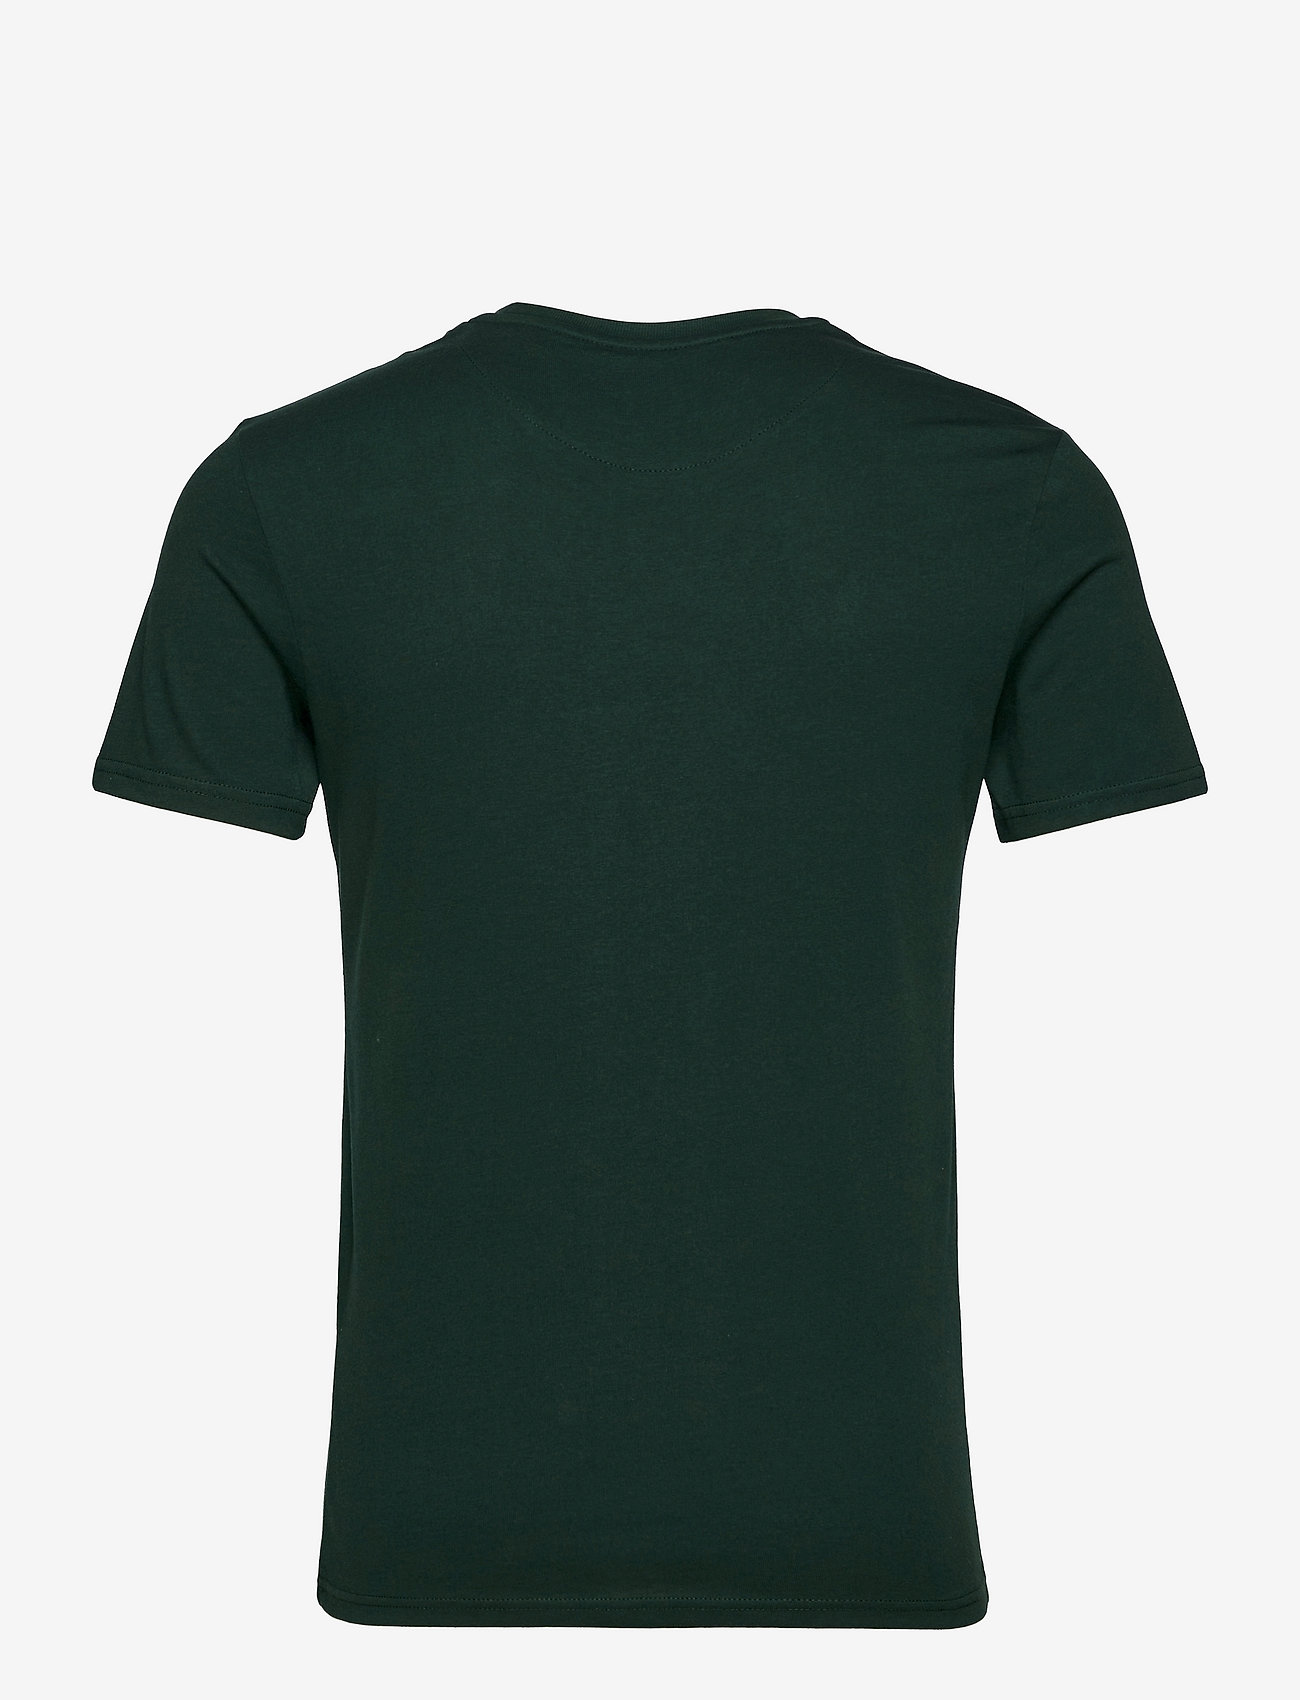 Lyle & Scott - Plain T-Shirt - die niedrigsten preise - dark green - 1